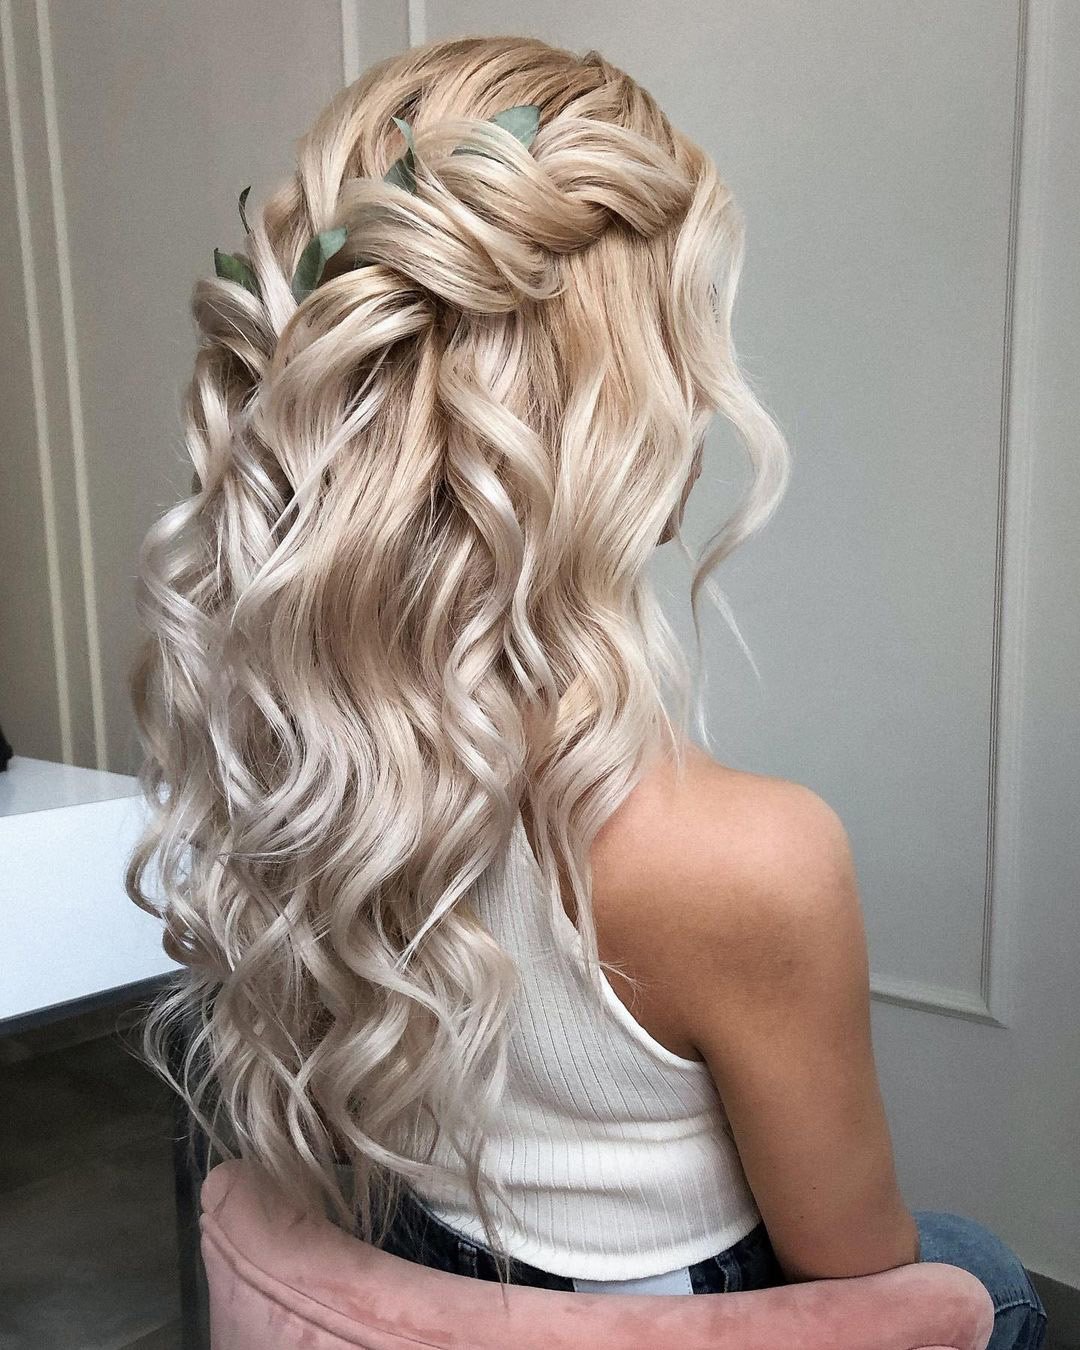 wedding hairstyles down volume blonde curls with greenery alexandra_poslavskaya